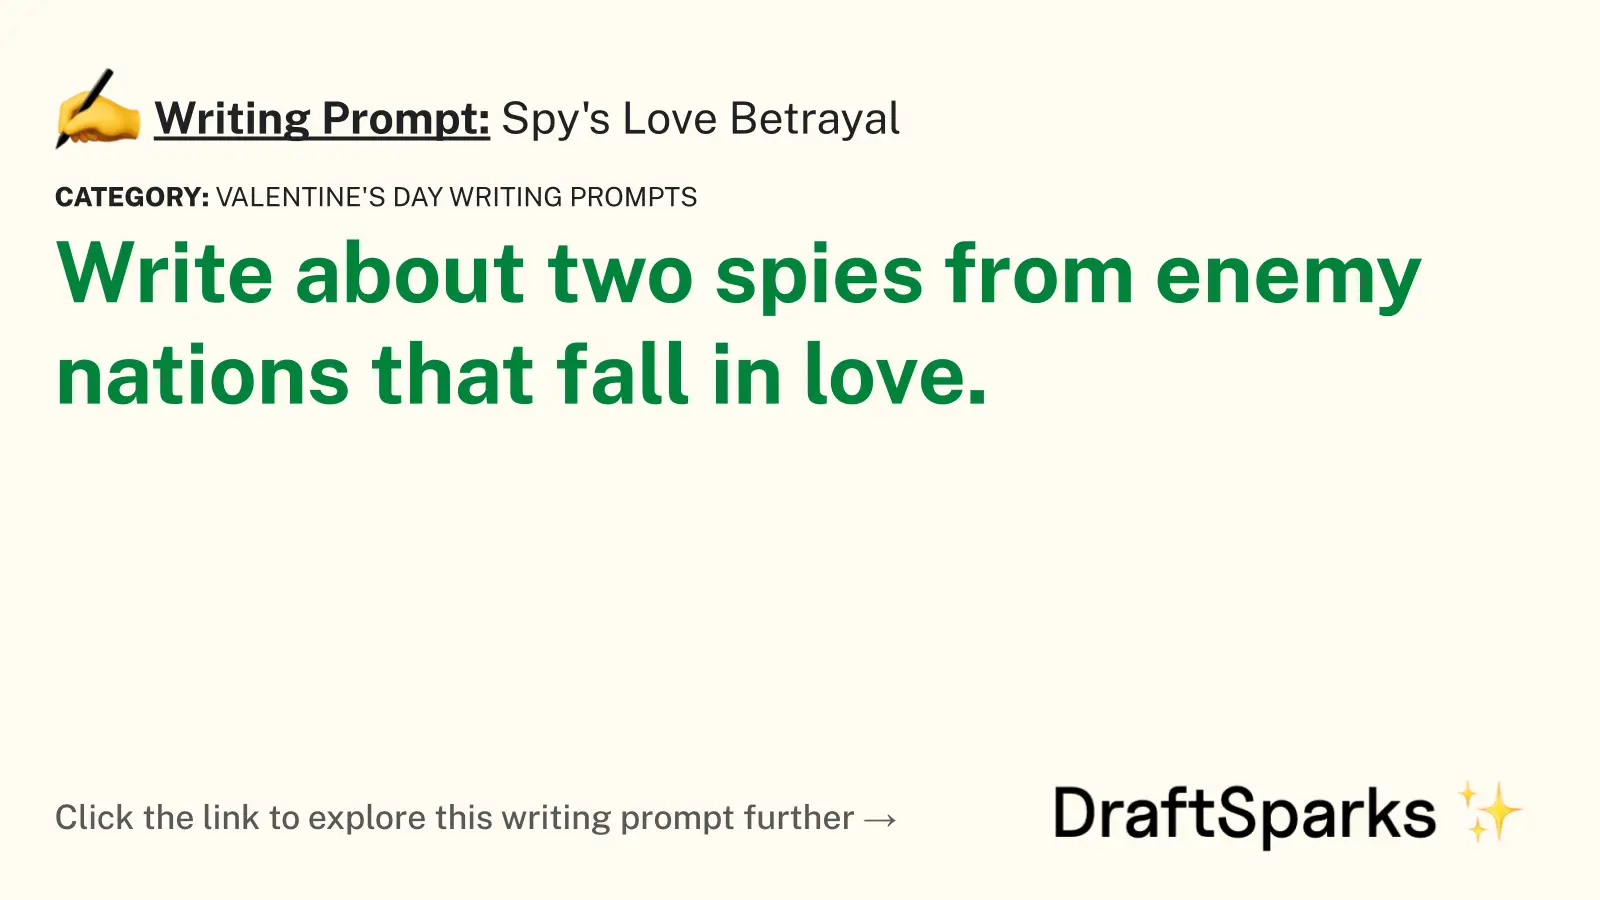 Spy’s Love Betrayal